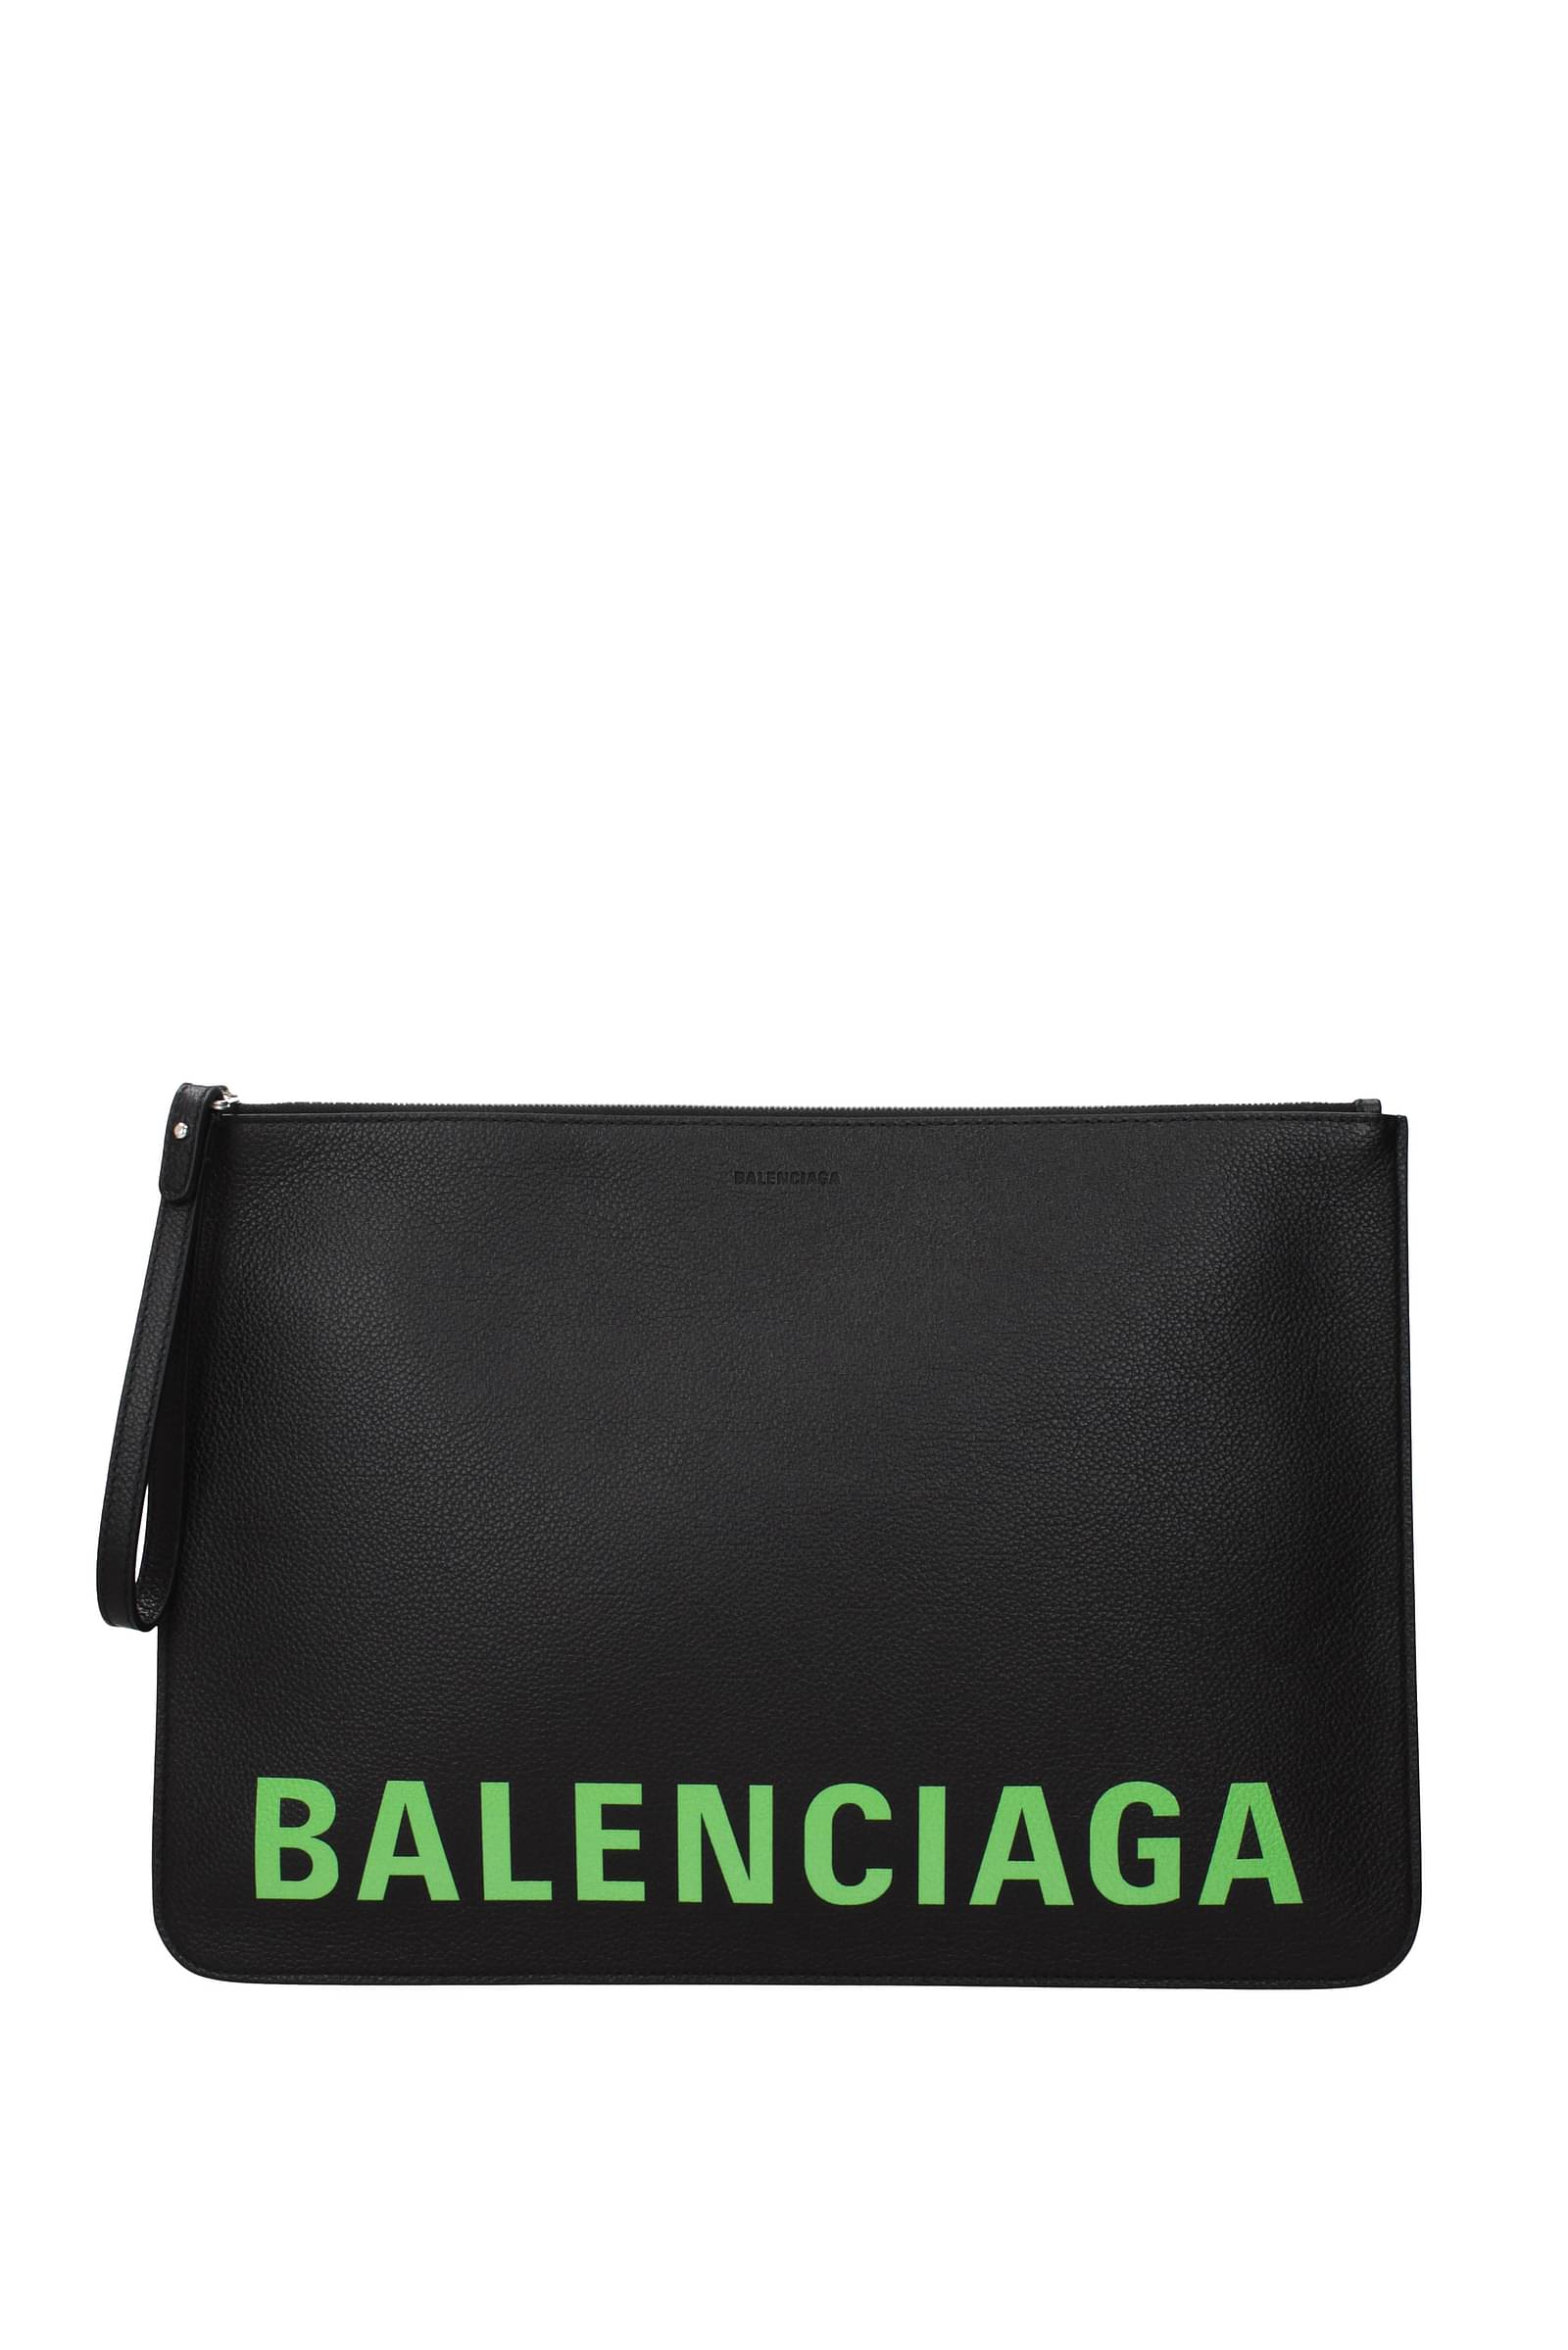 BALENCIAGA Hourglass Logo Canvas Bag OUTLET FINAL SALE  ALB